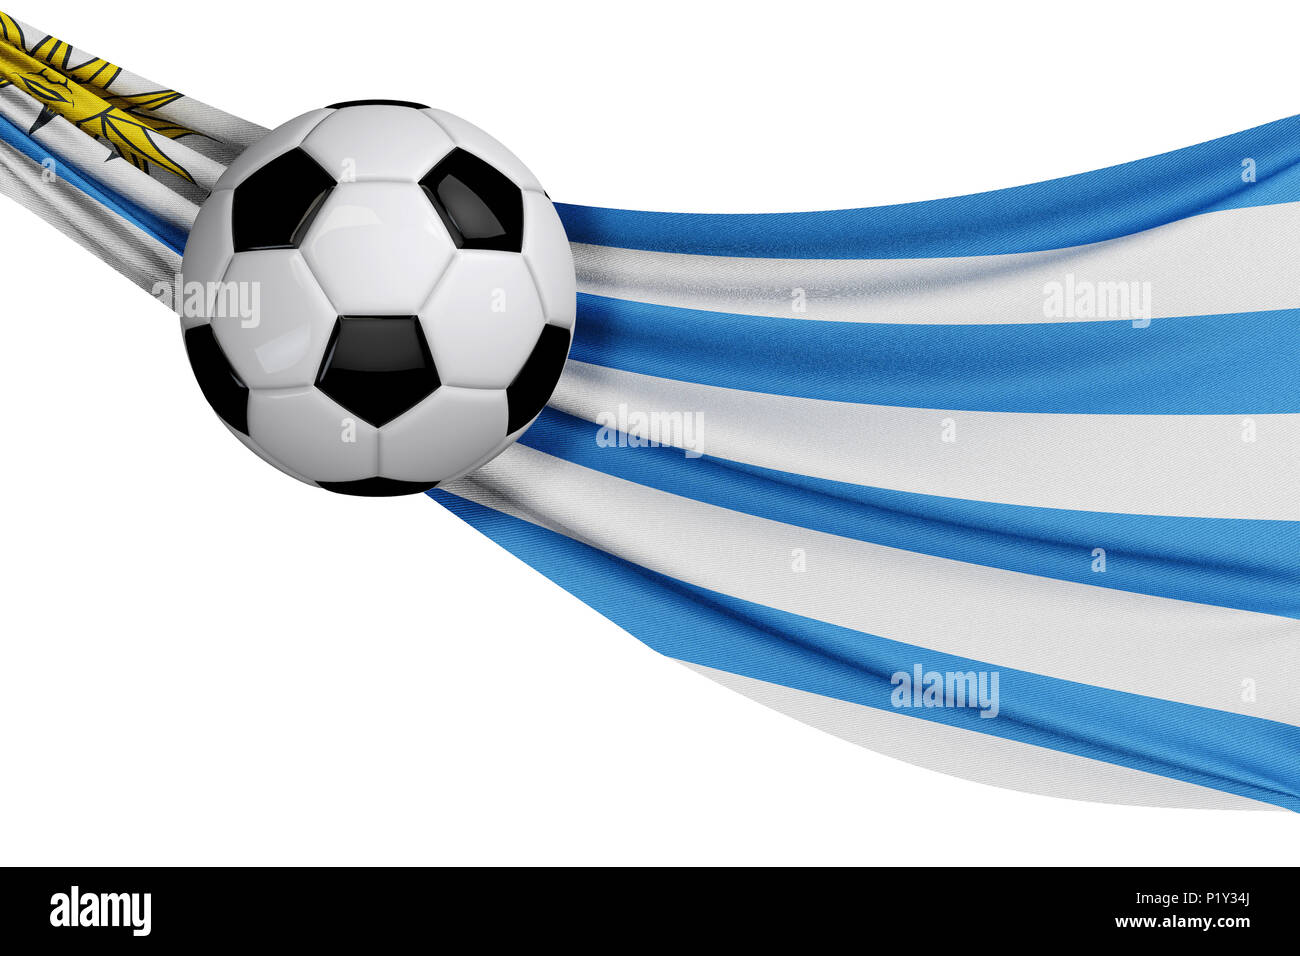 El Uruguay hecho pelota - FutbolFlorida